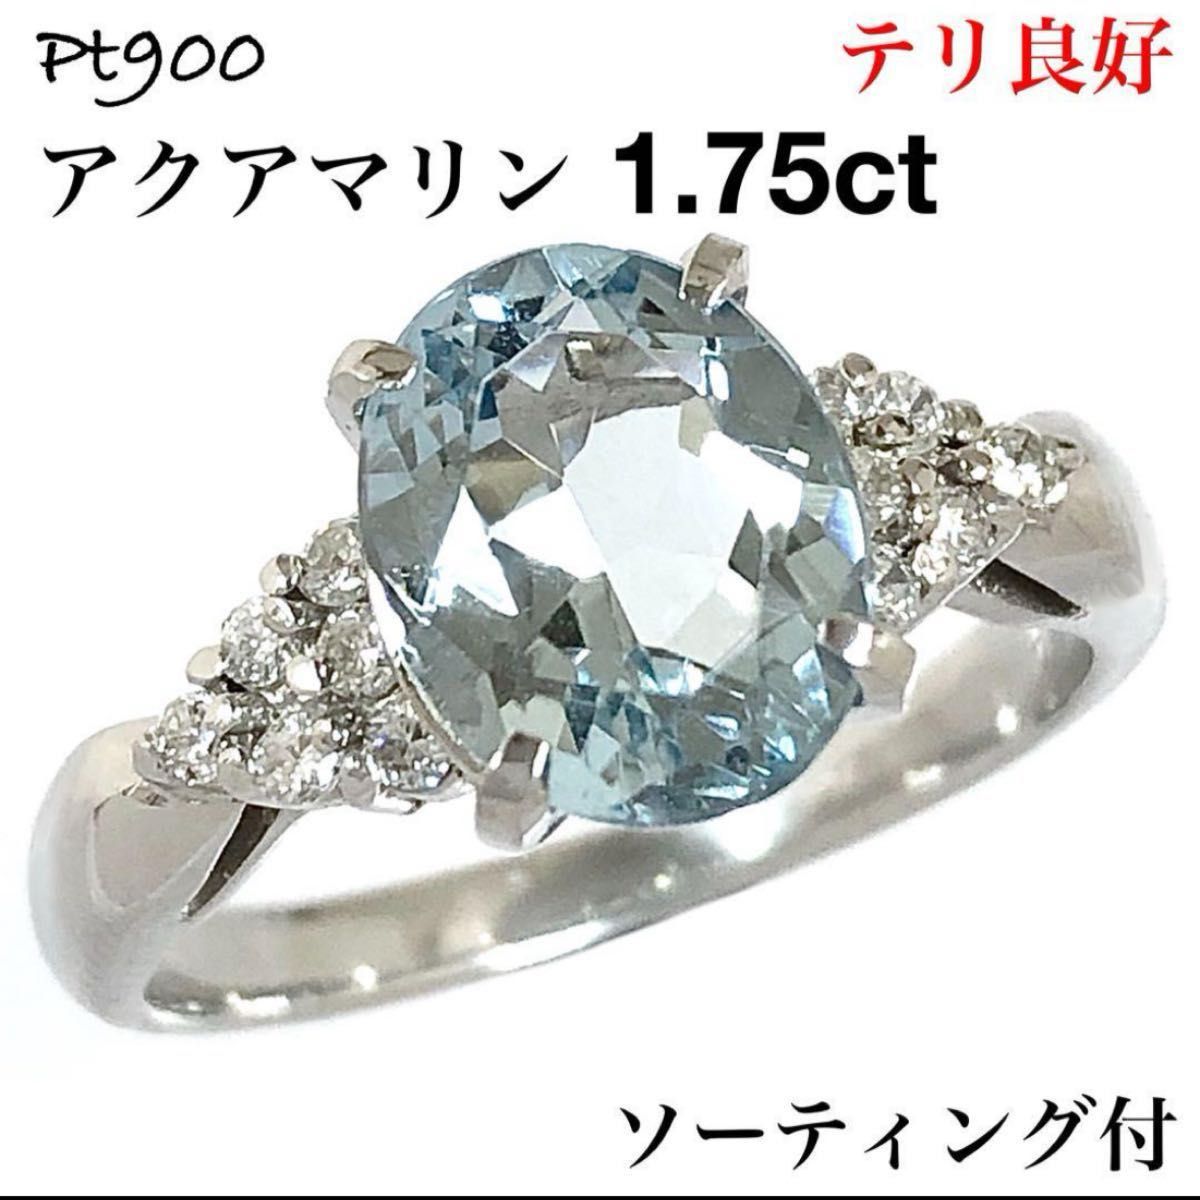 高級 Pt900 アクアマリン 1.75ct ダイヤモンド ダイヤ リング 指輪